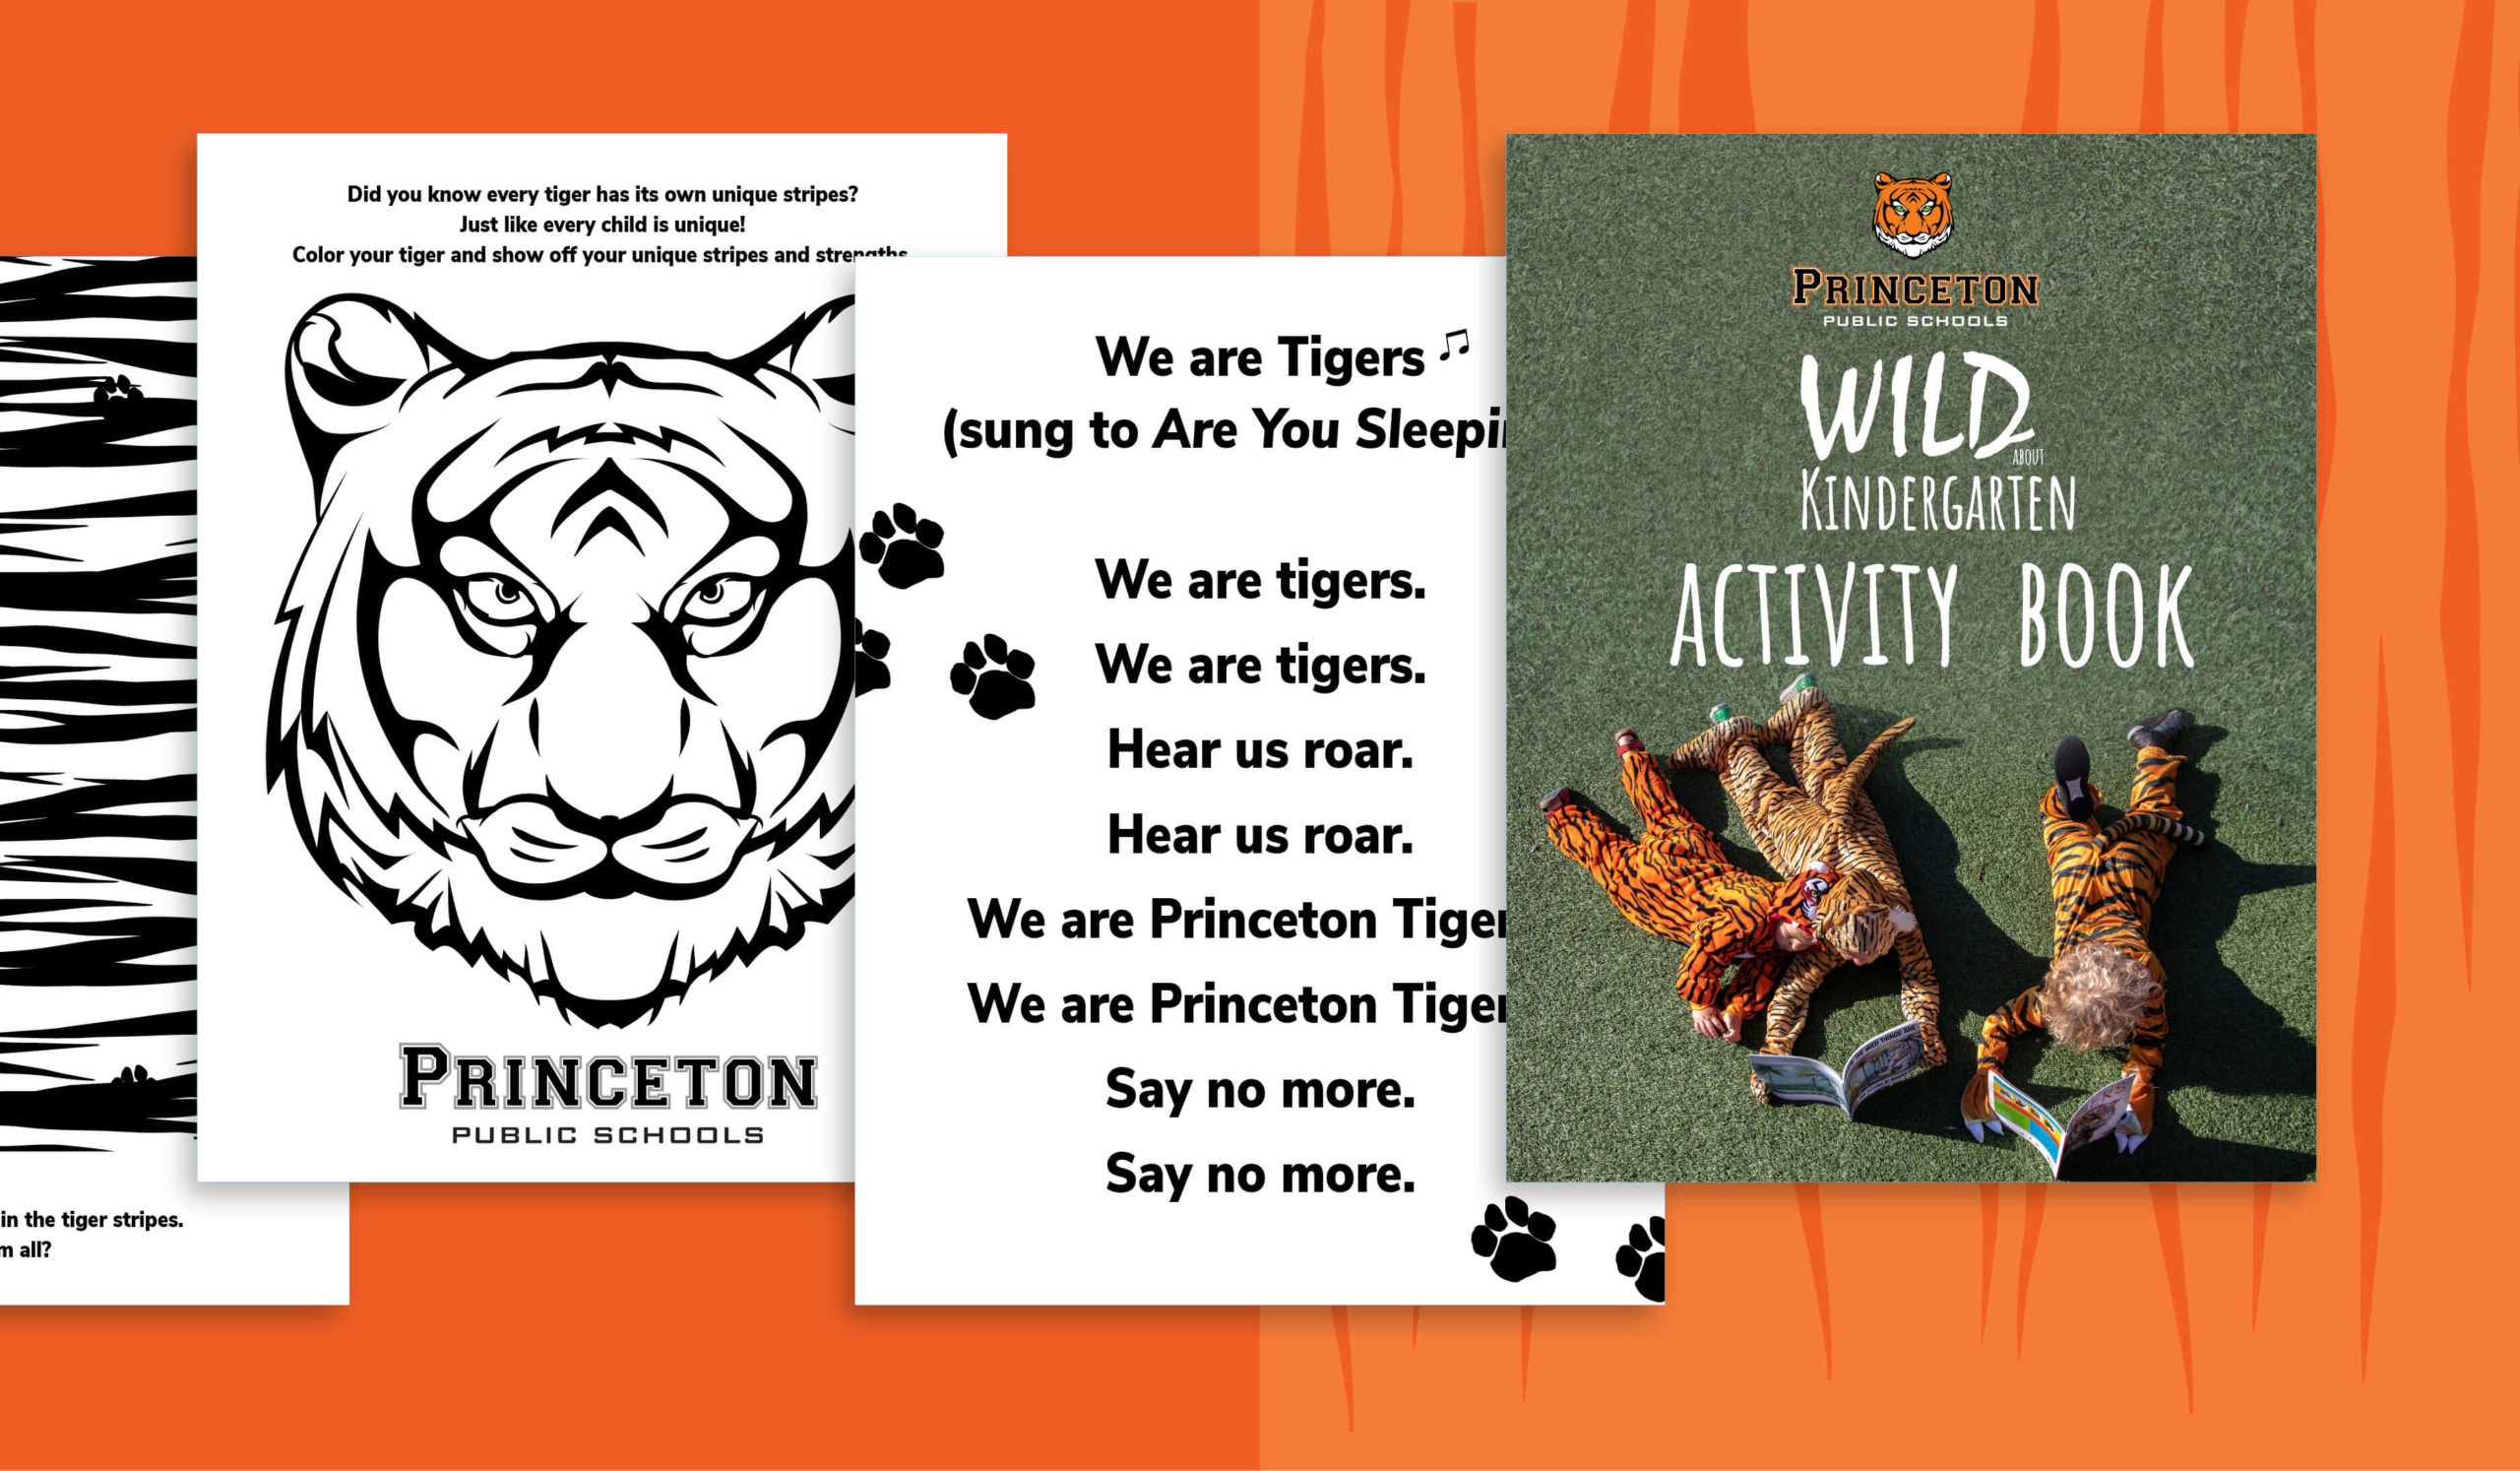 wild about kindergarten activity book princeton